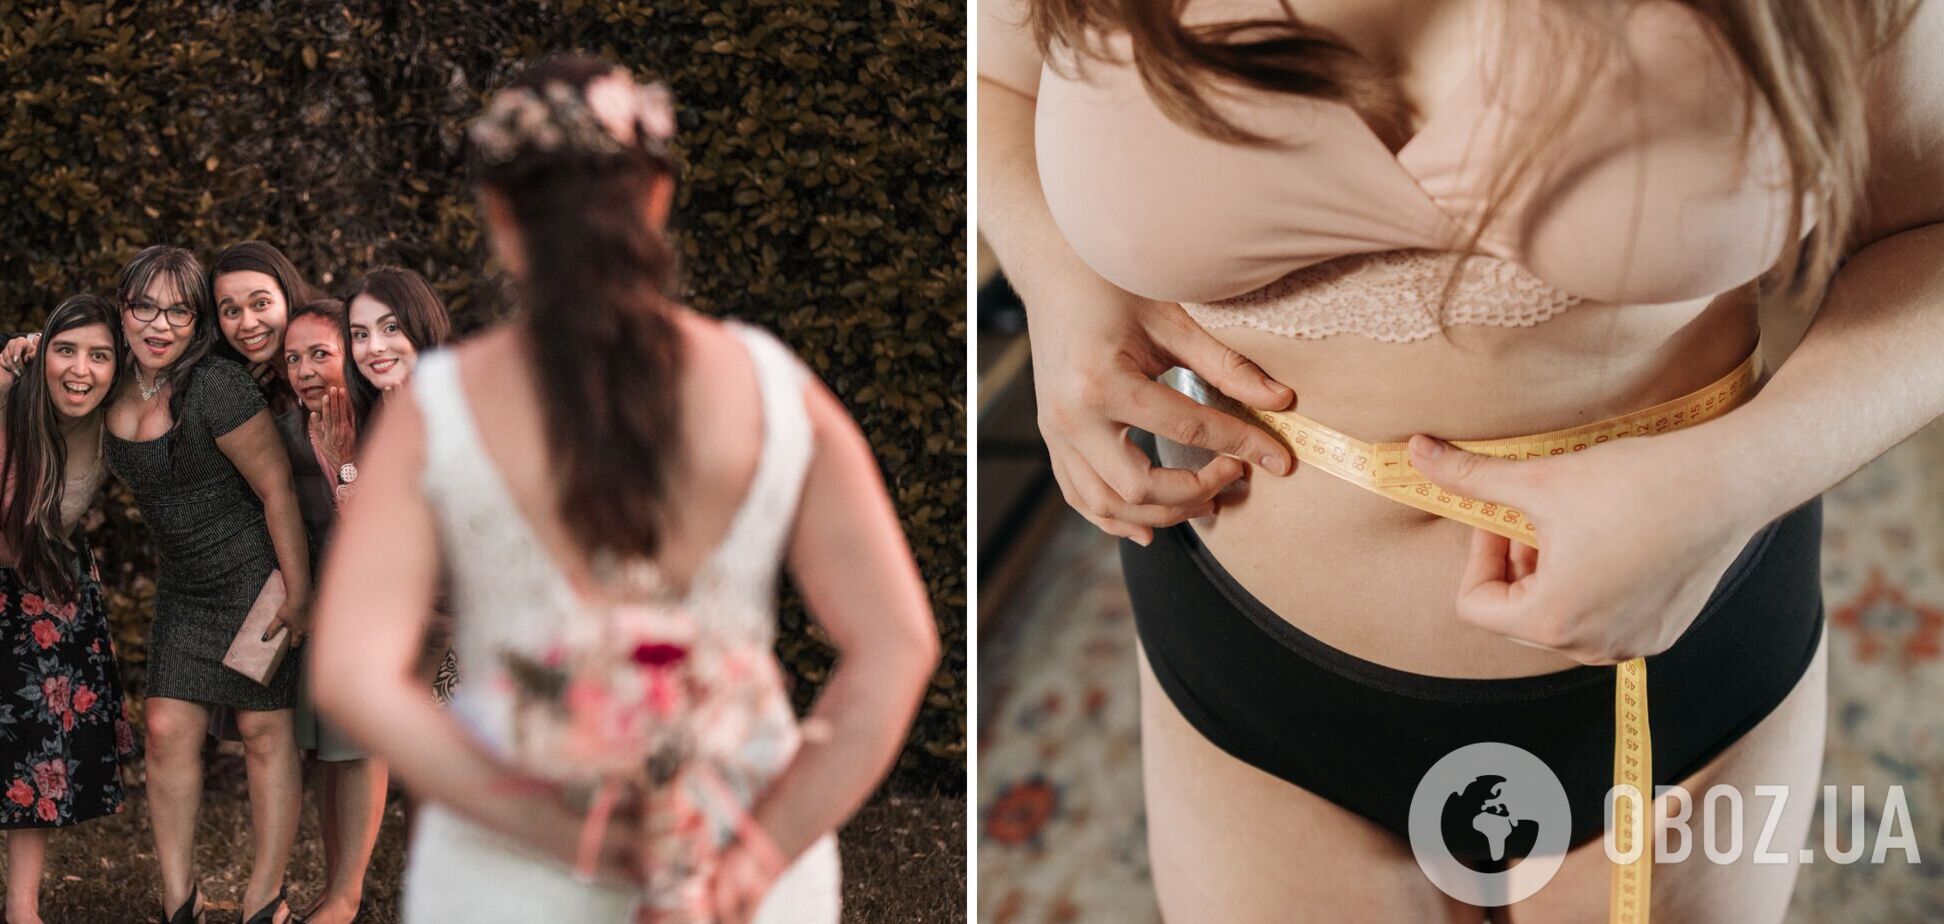 Девушка сбросила почти 30 кг, чтобы не портить свадебные фото сестры. Фото до и после